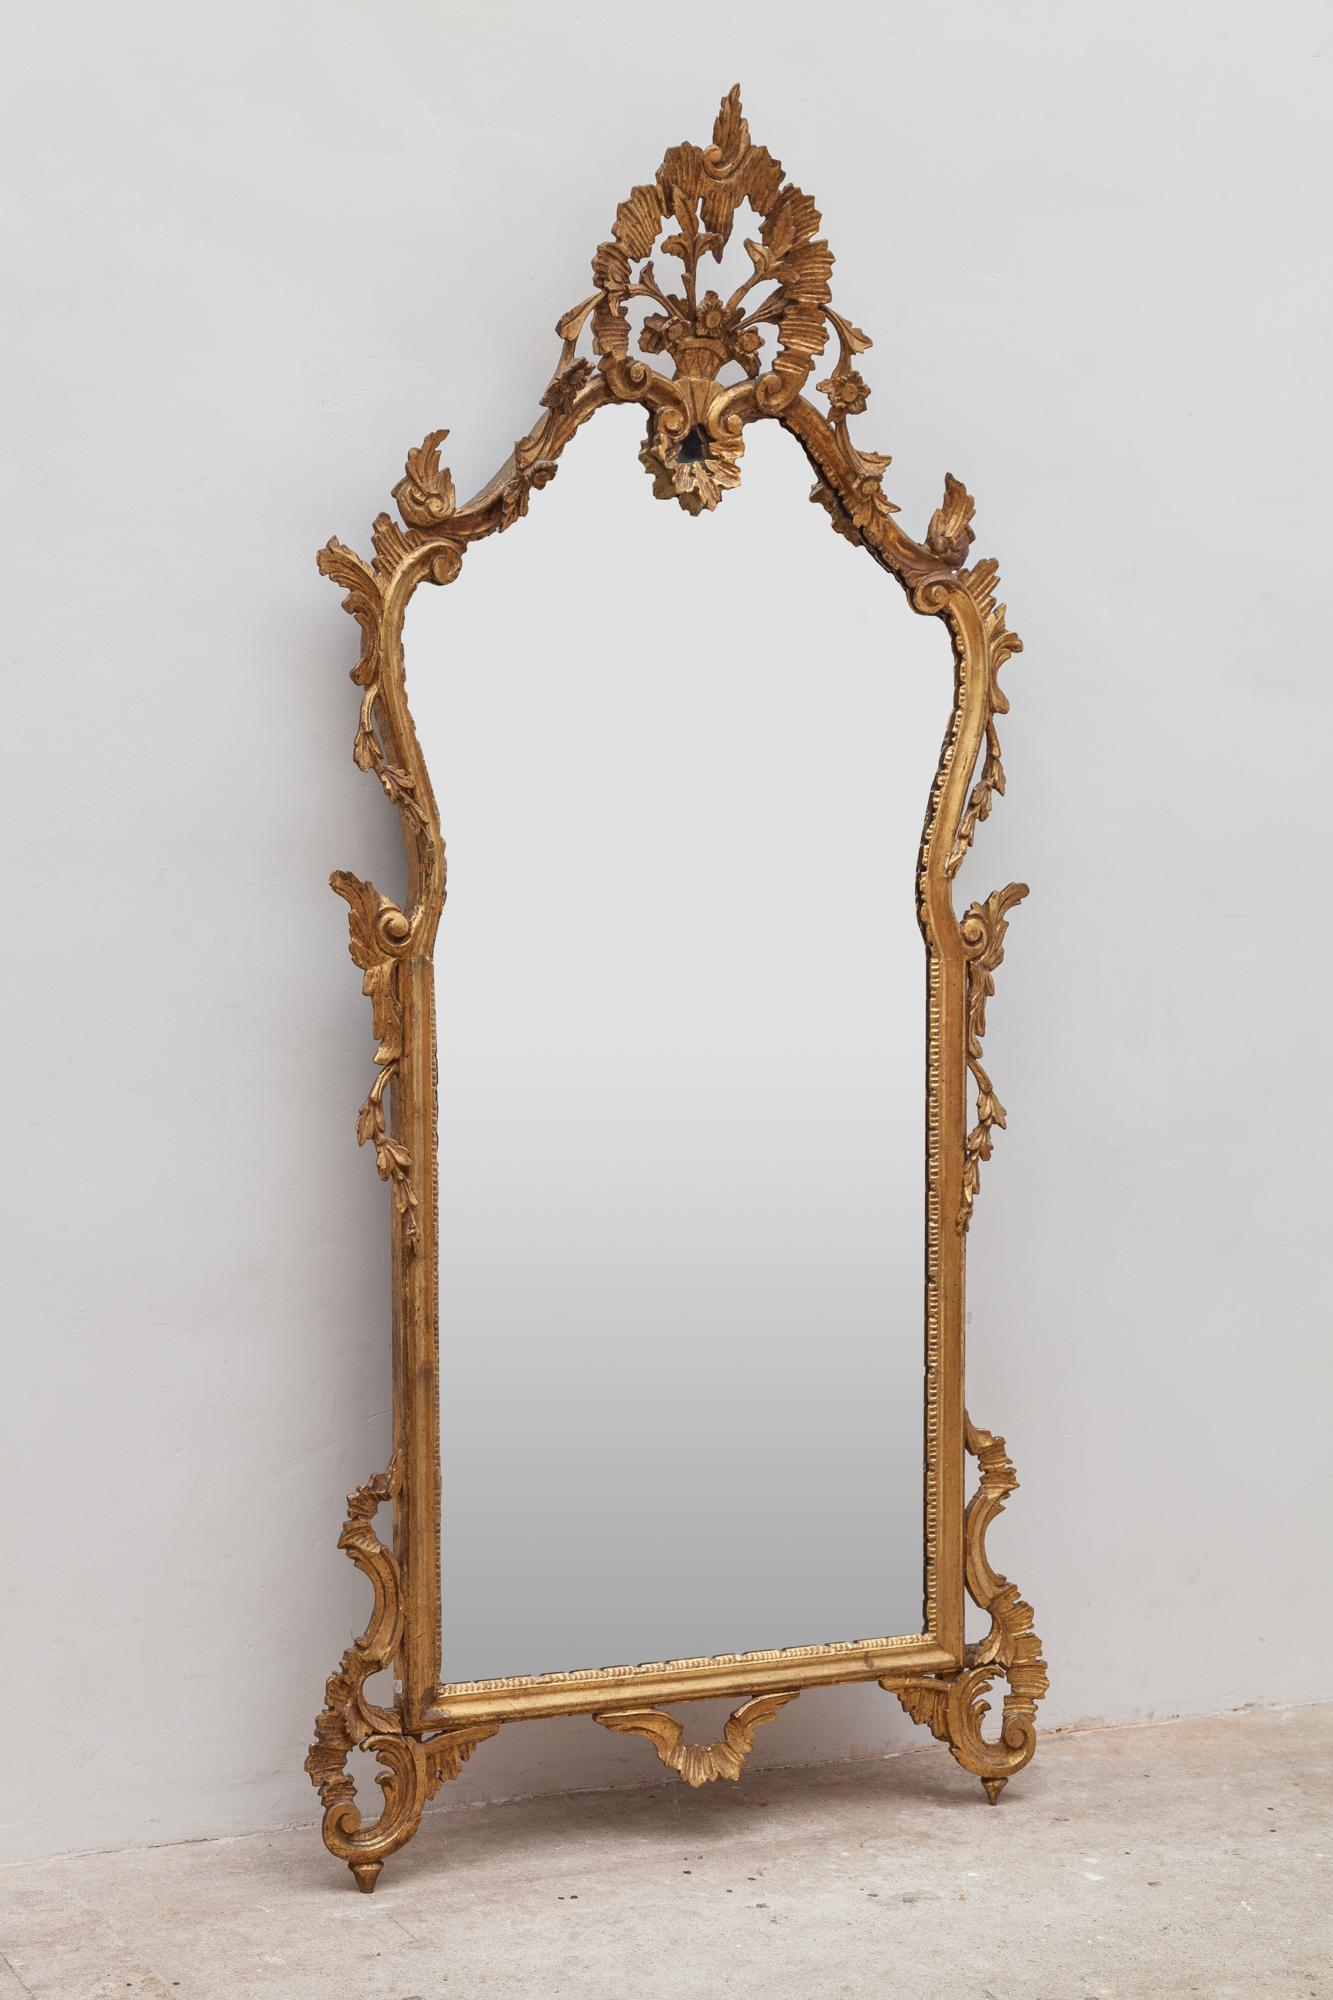 spiegel im Rokoko-Stil aus dem 19. Jahrhundert, goldfarbener Rahmen mit Darstellung eines Blumenkorbs. Der Spiegel ist in einem ausgezeichneten Zustand, ohne Kratzer auf dem Glas.
Der französische Rokoko-Revival-Spiegel aus den 1860er Jahren wird